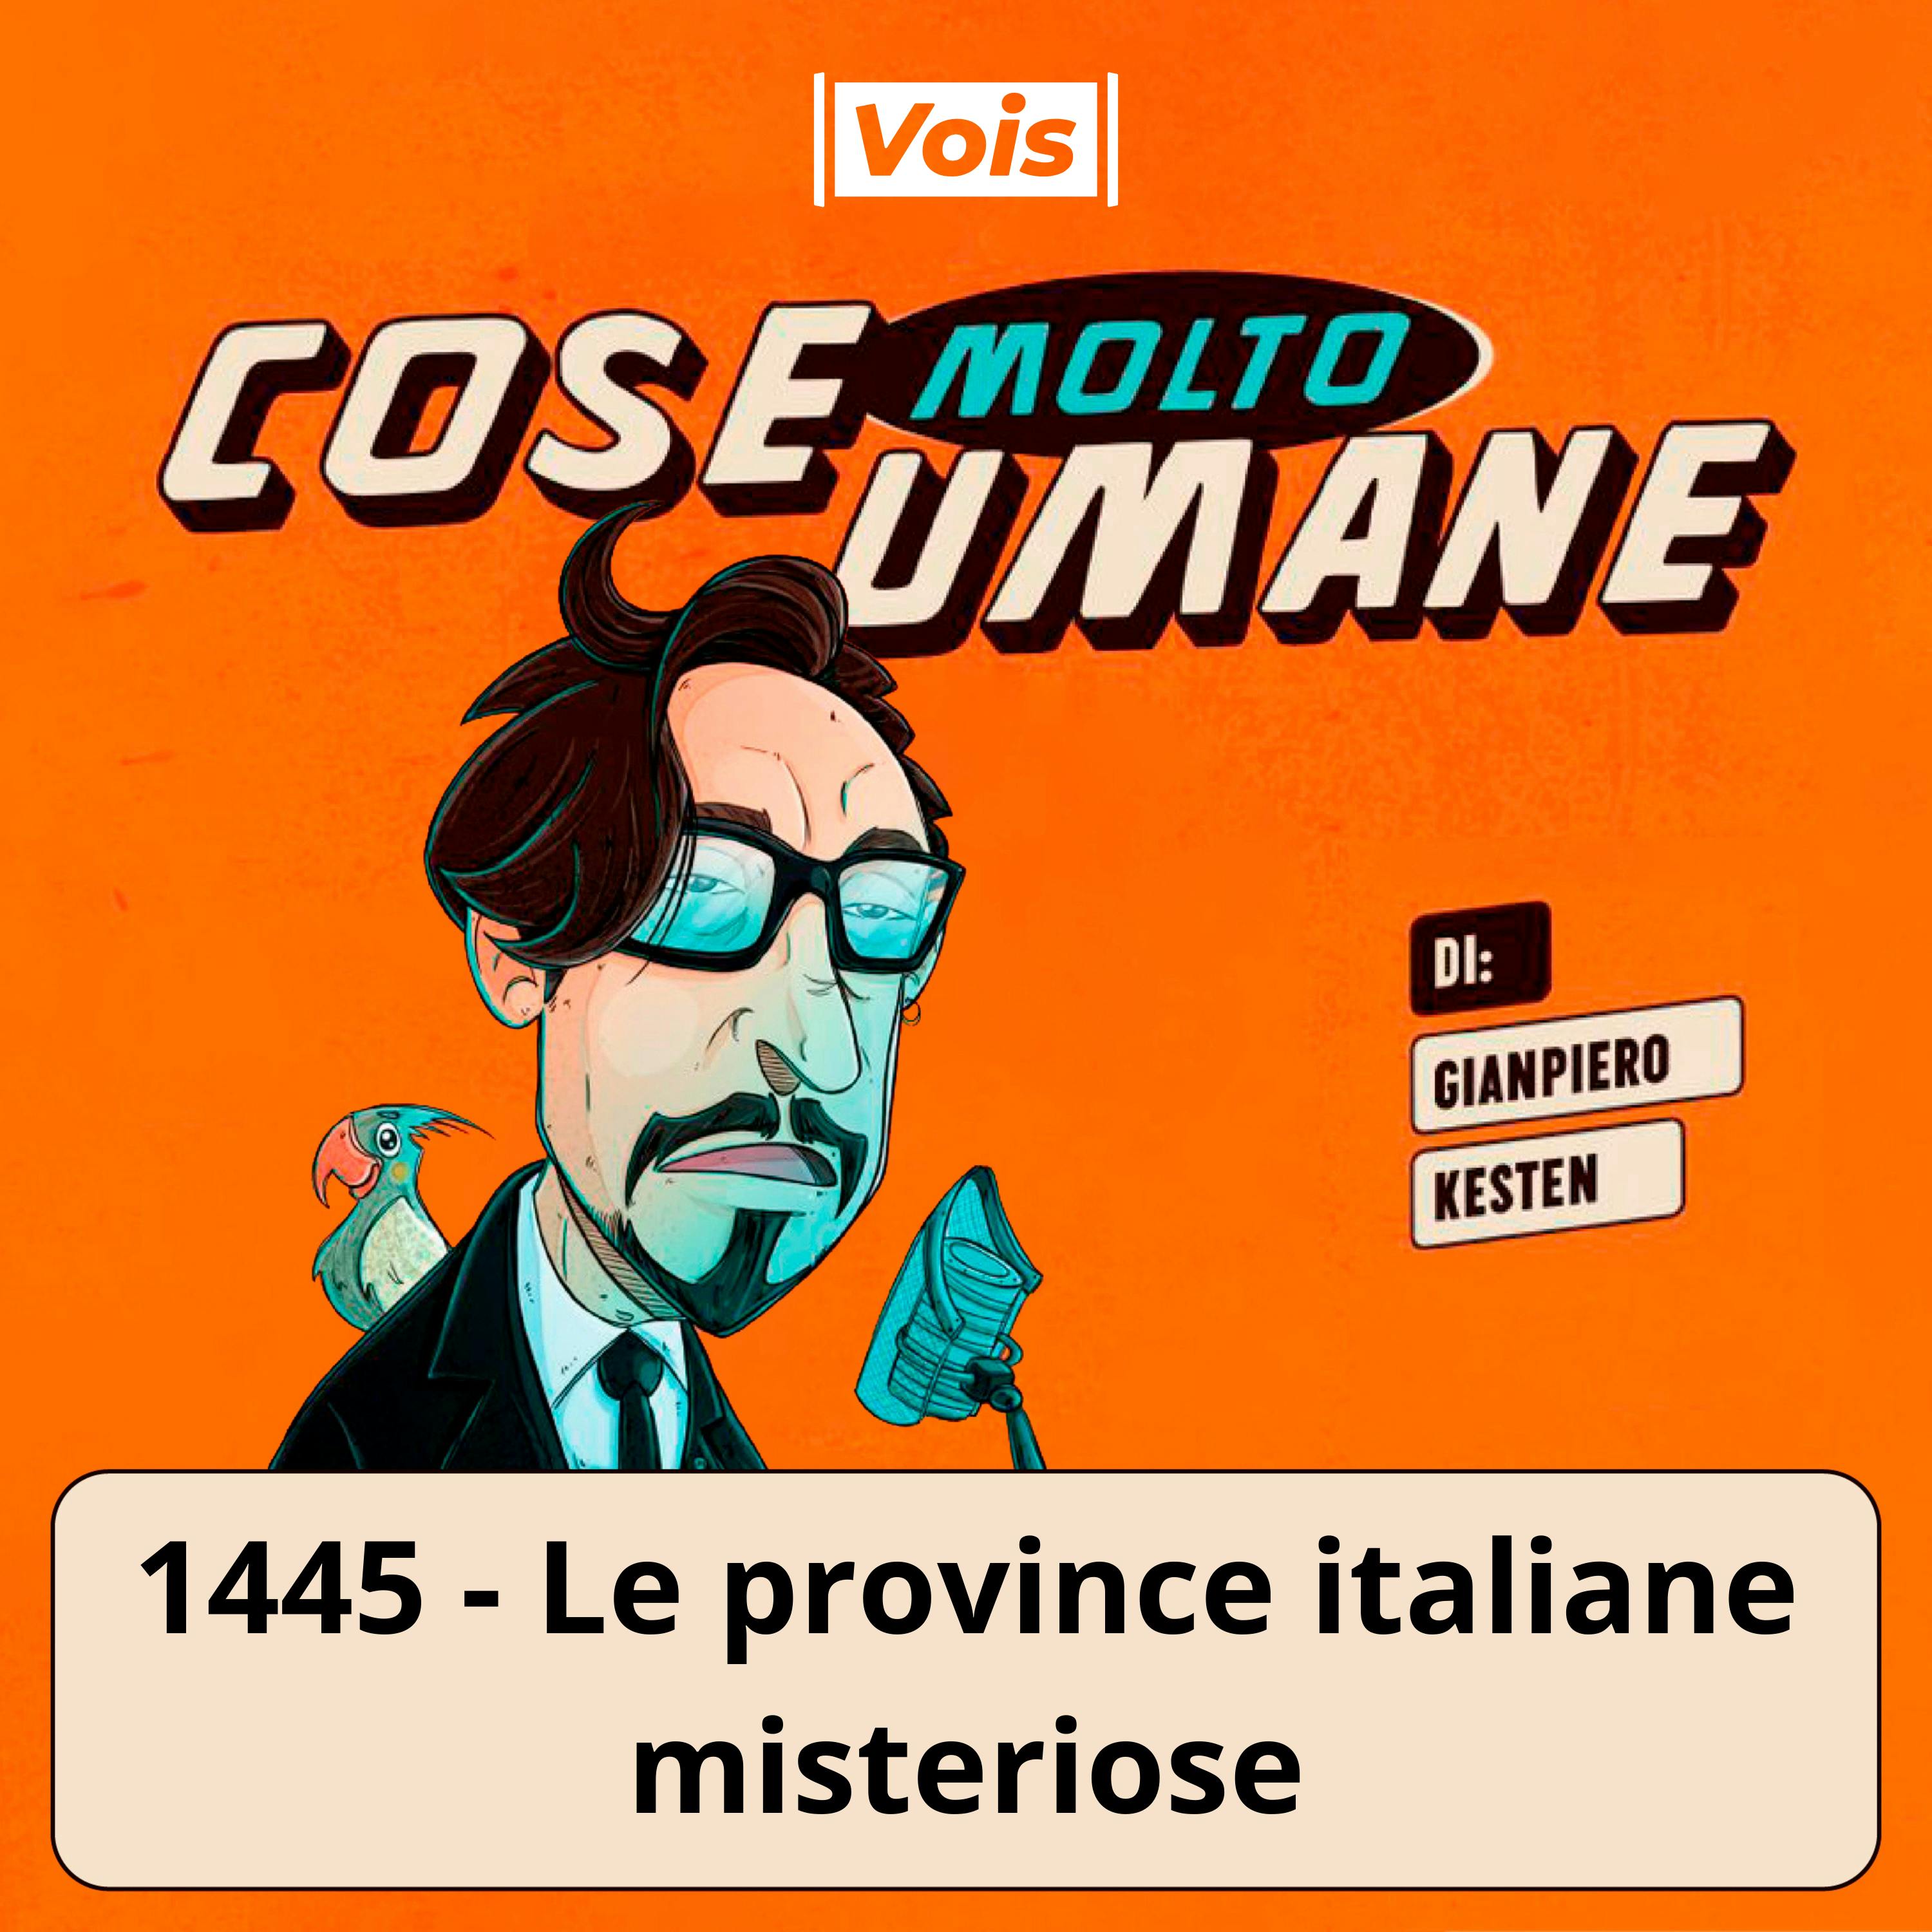 1445 - Le province italiane misteriose